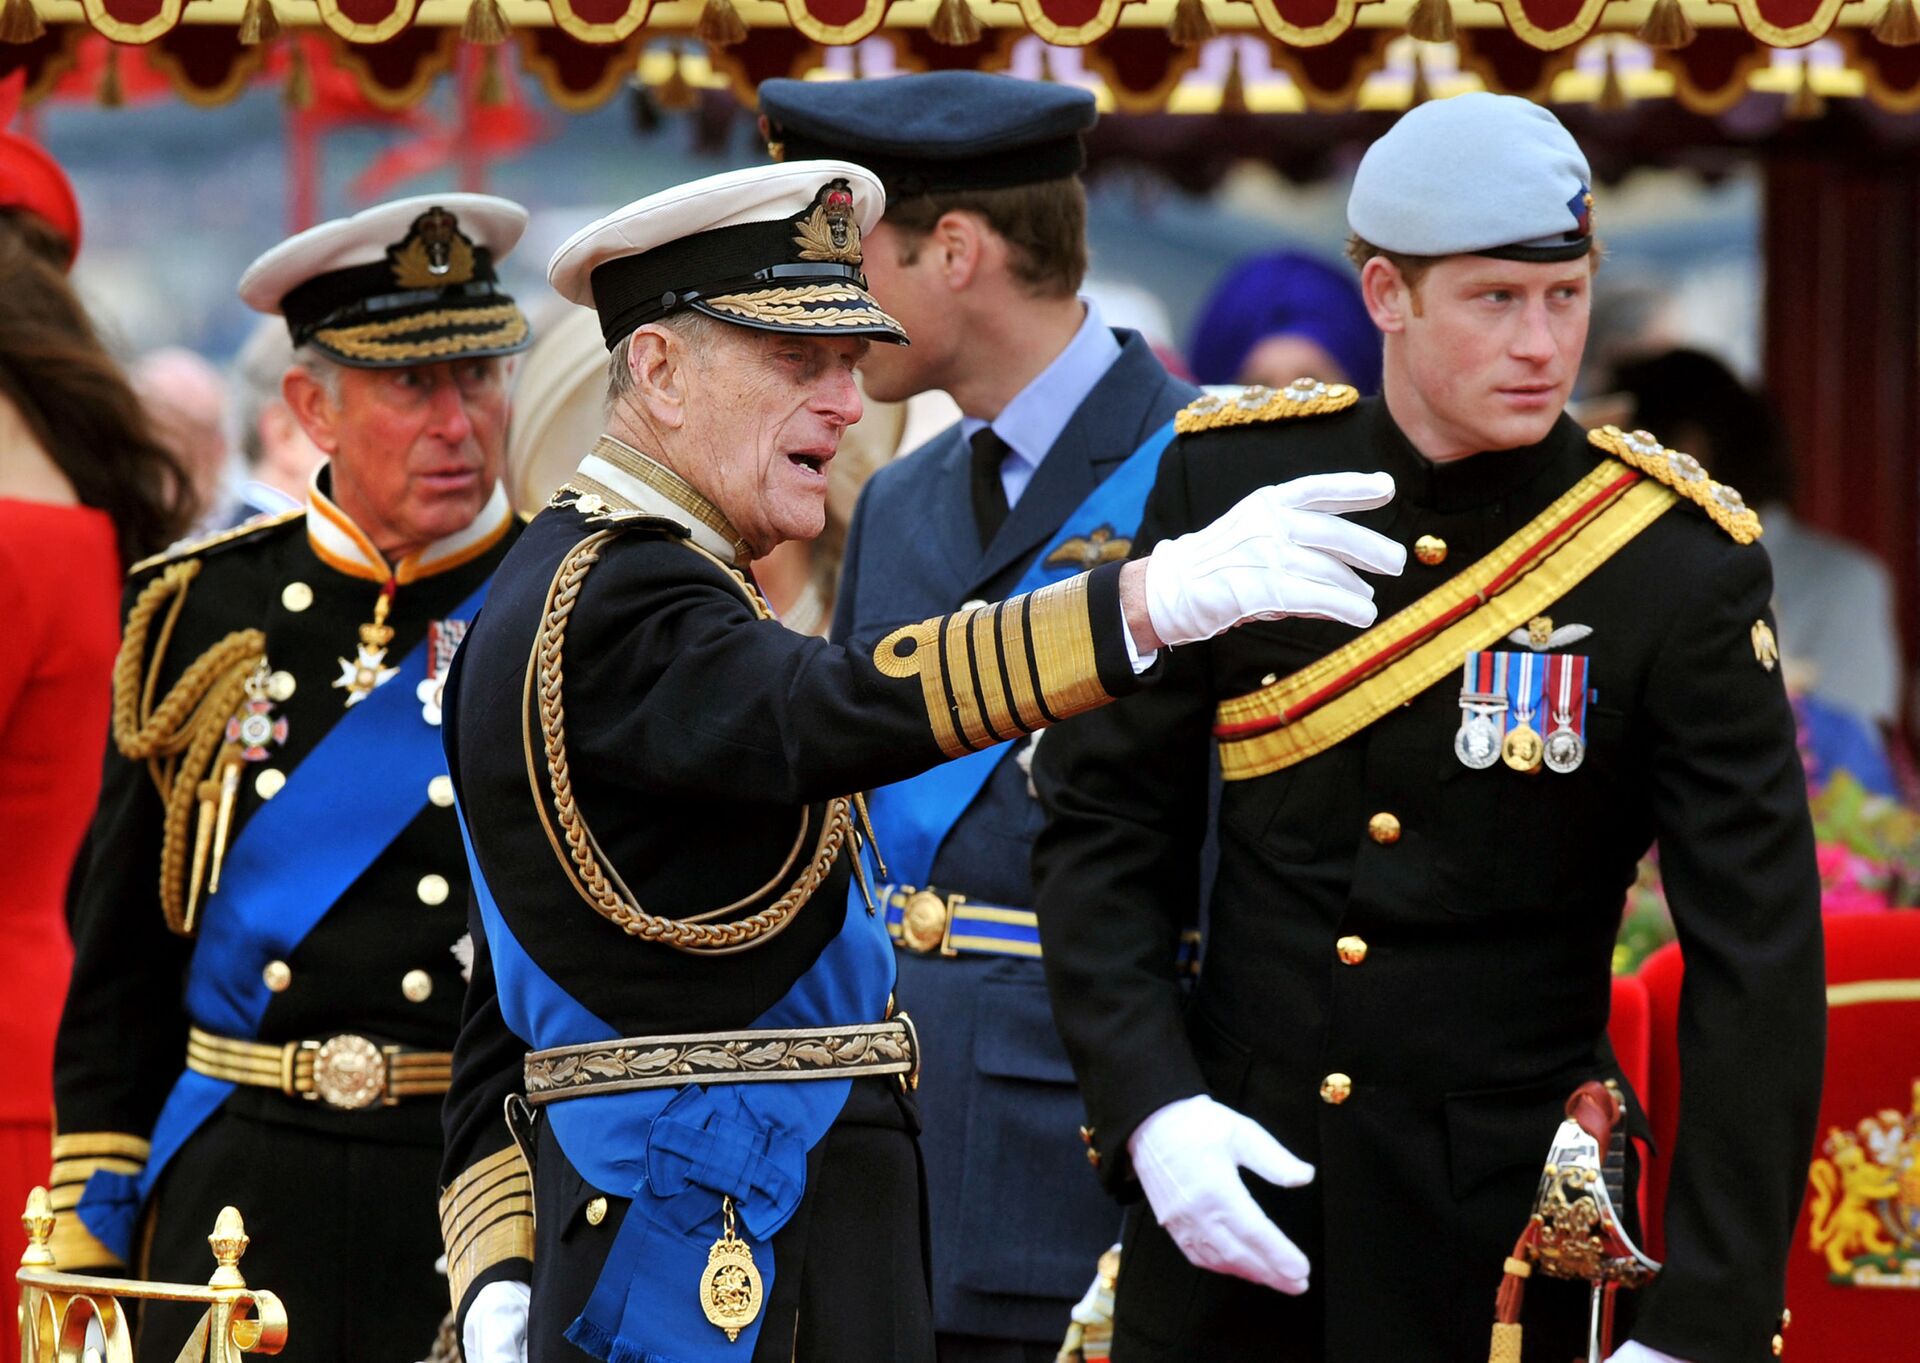 Члены королевской семьи принц Чарльз, принц Филипп, принц Уильям и принц Гарри, 3 июня 2012 - Sputnik Lietuva, 1920, 12.05.2021